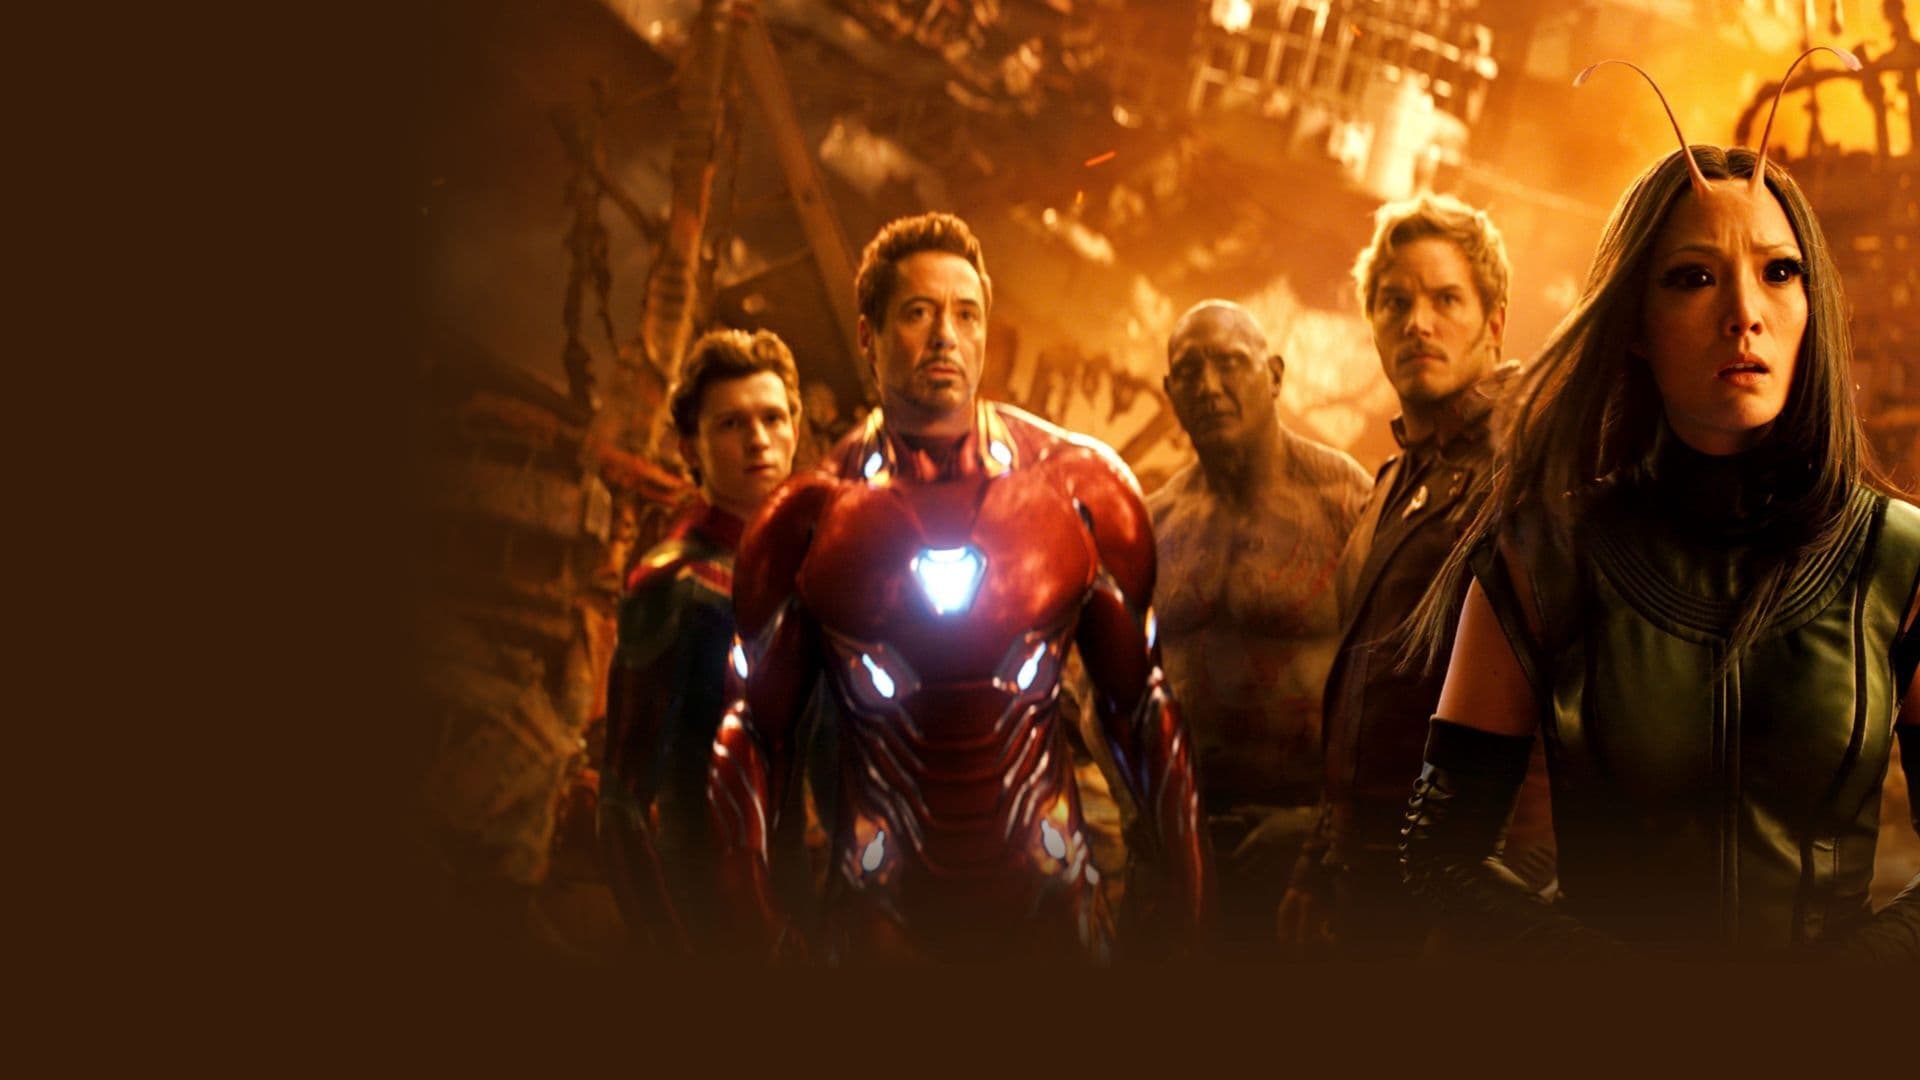 Image du film Avengers : Infinity War zjsh6pjlqz36b6tjvf22uk1jdgvjpg